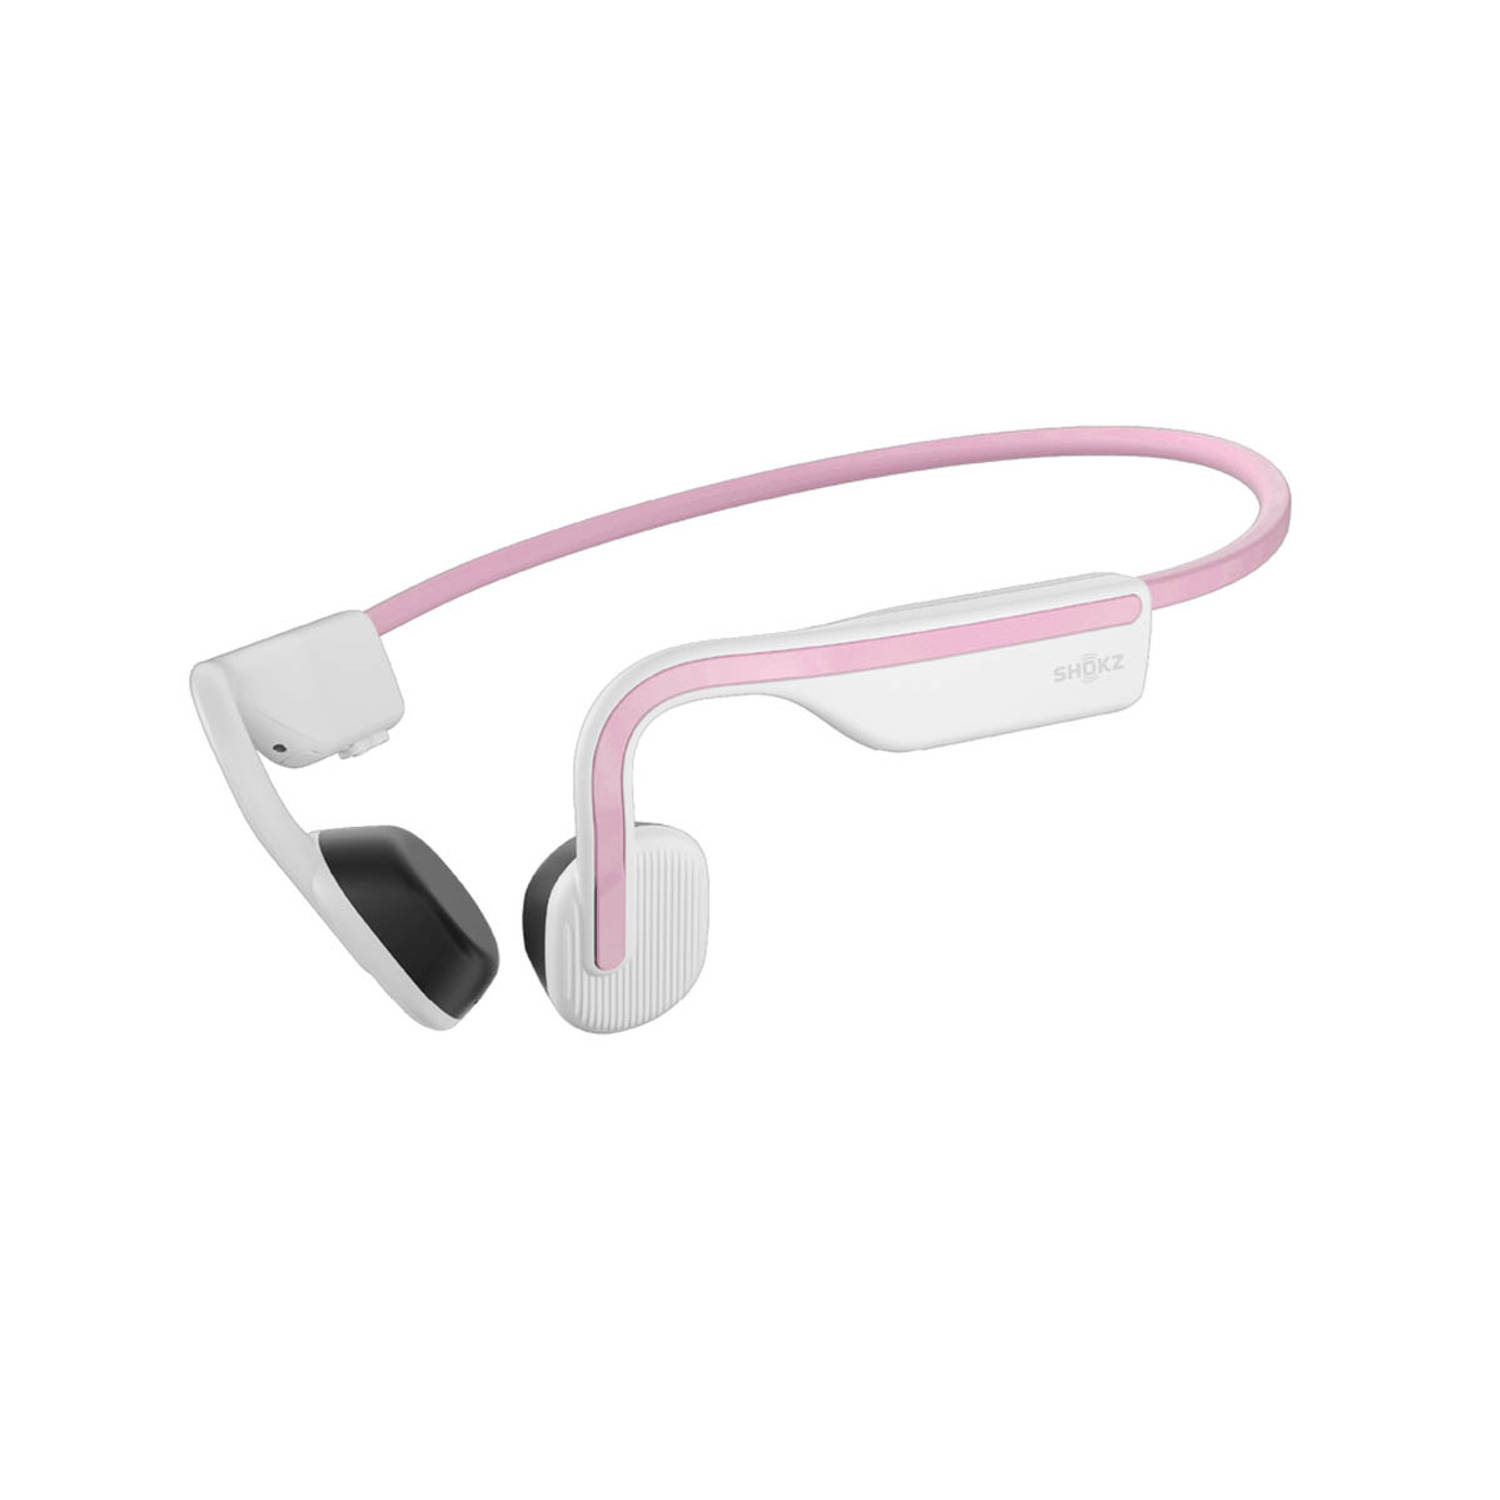 Shokz OpenMove Bluetooth draadloze sport hoofdtelefoon met microfoon, 6 uur speeltijd, IP55 waterdicht (Himalayan Pink)